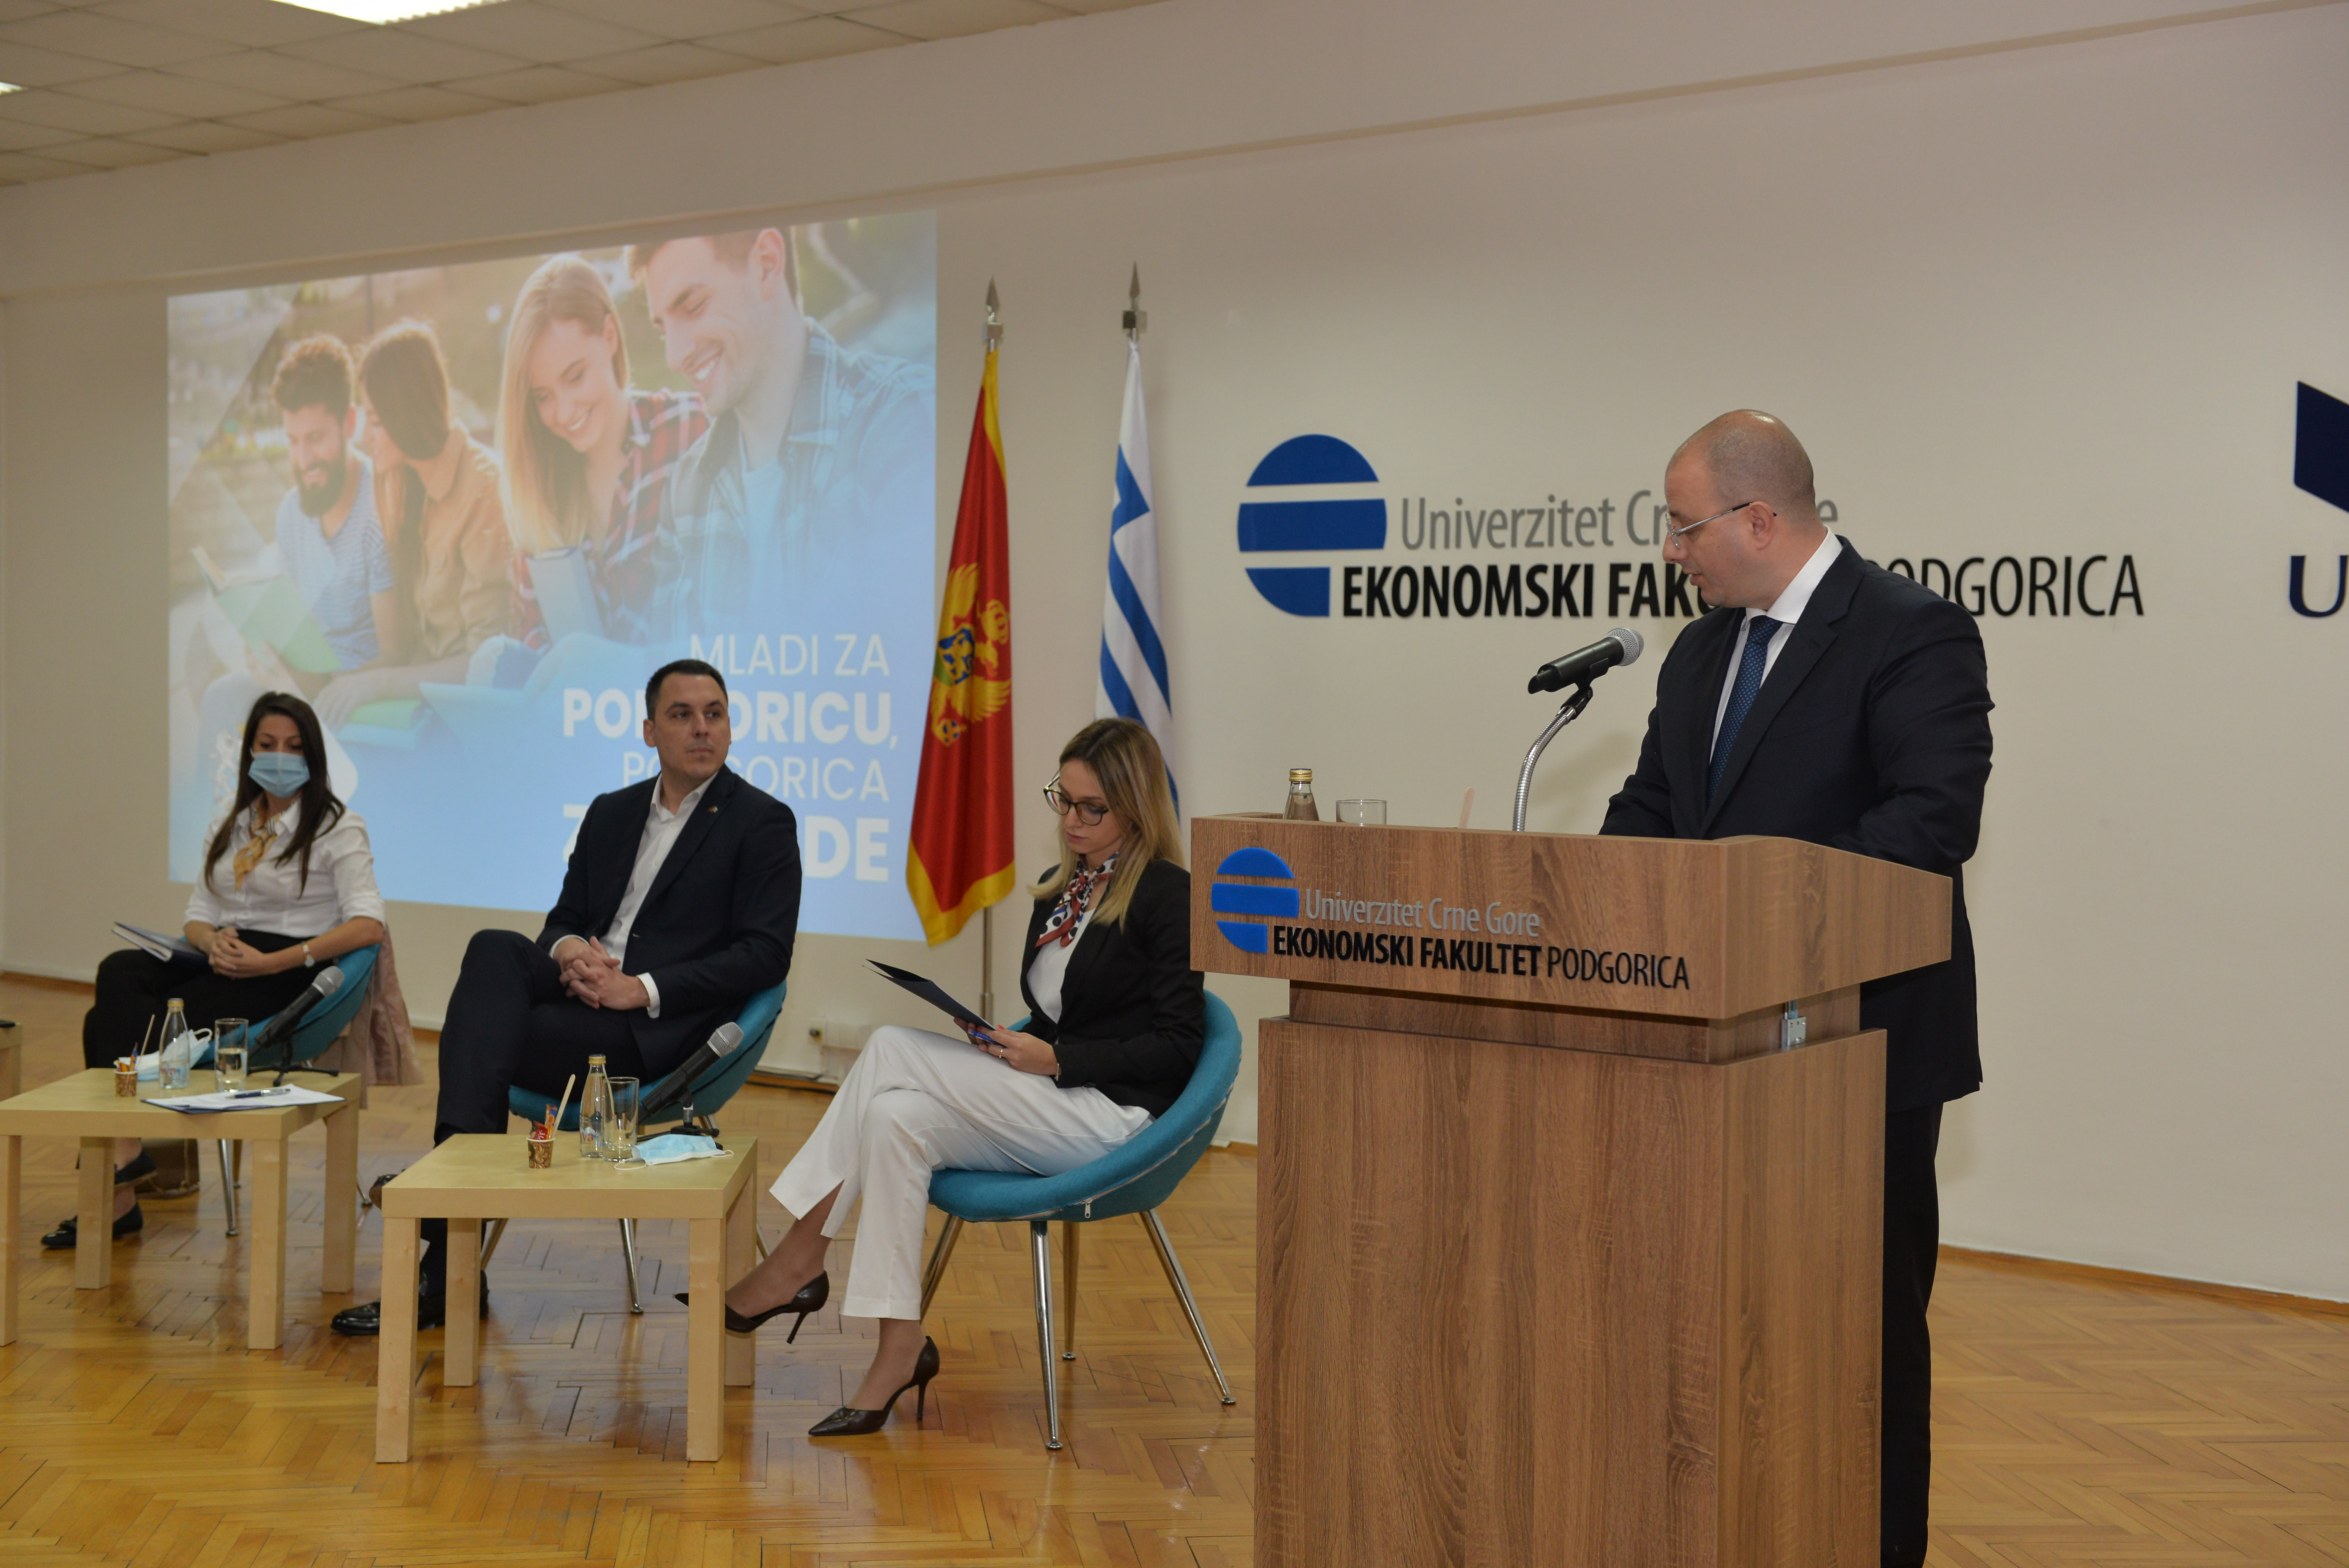 Vuković sa studentima: Podgorica nudi sadržaje koje su mladi ranije tražili u drugim evropskim gradovima